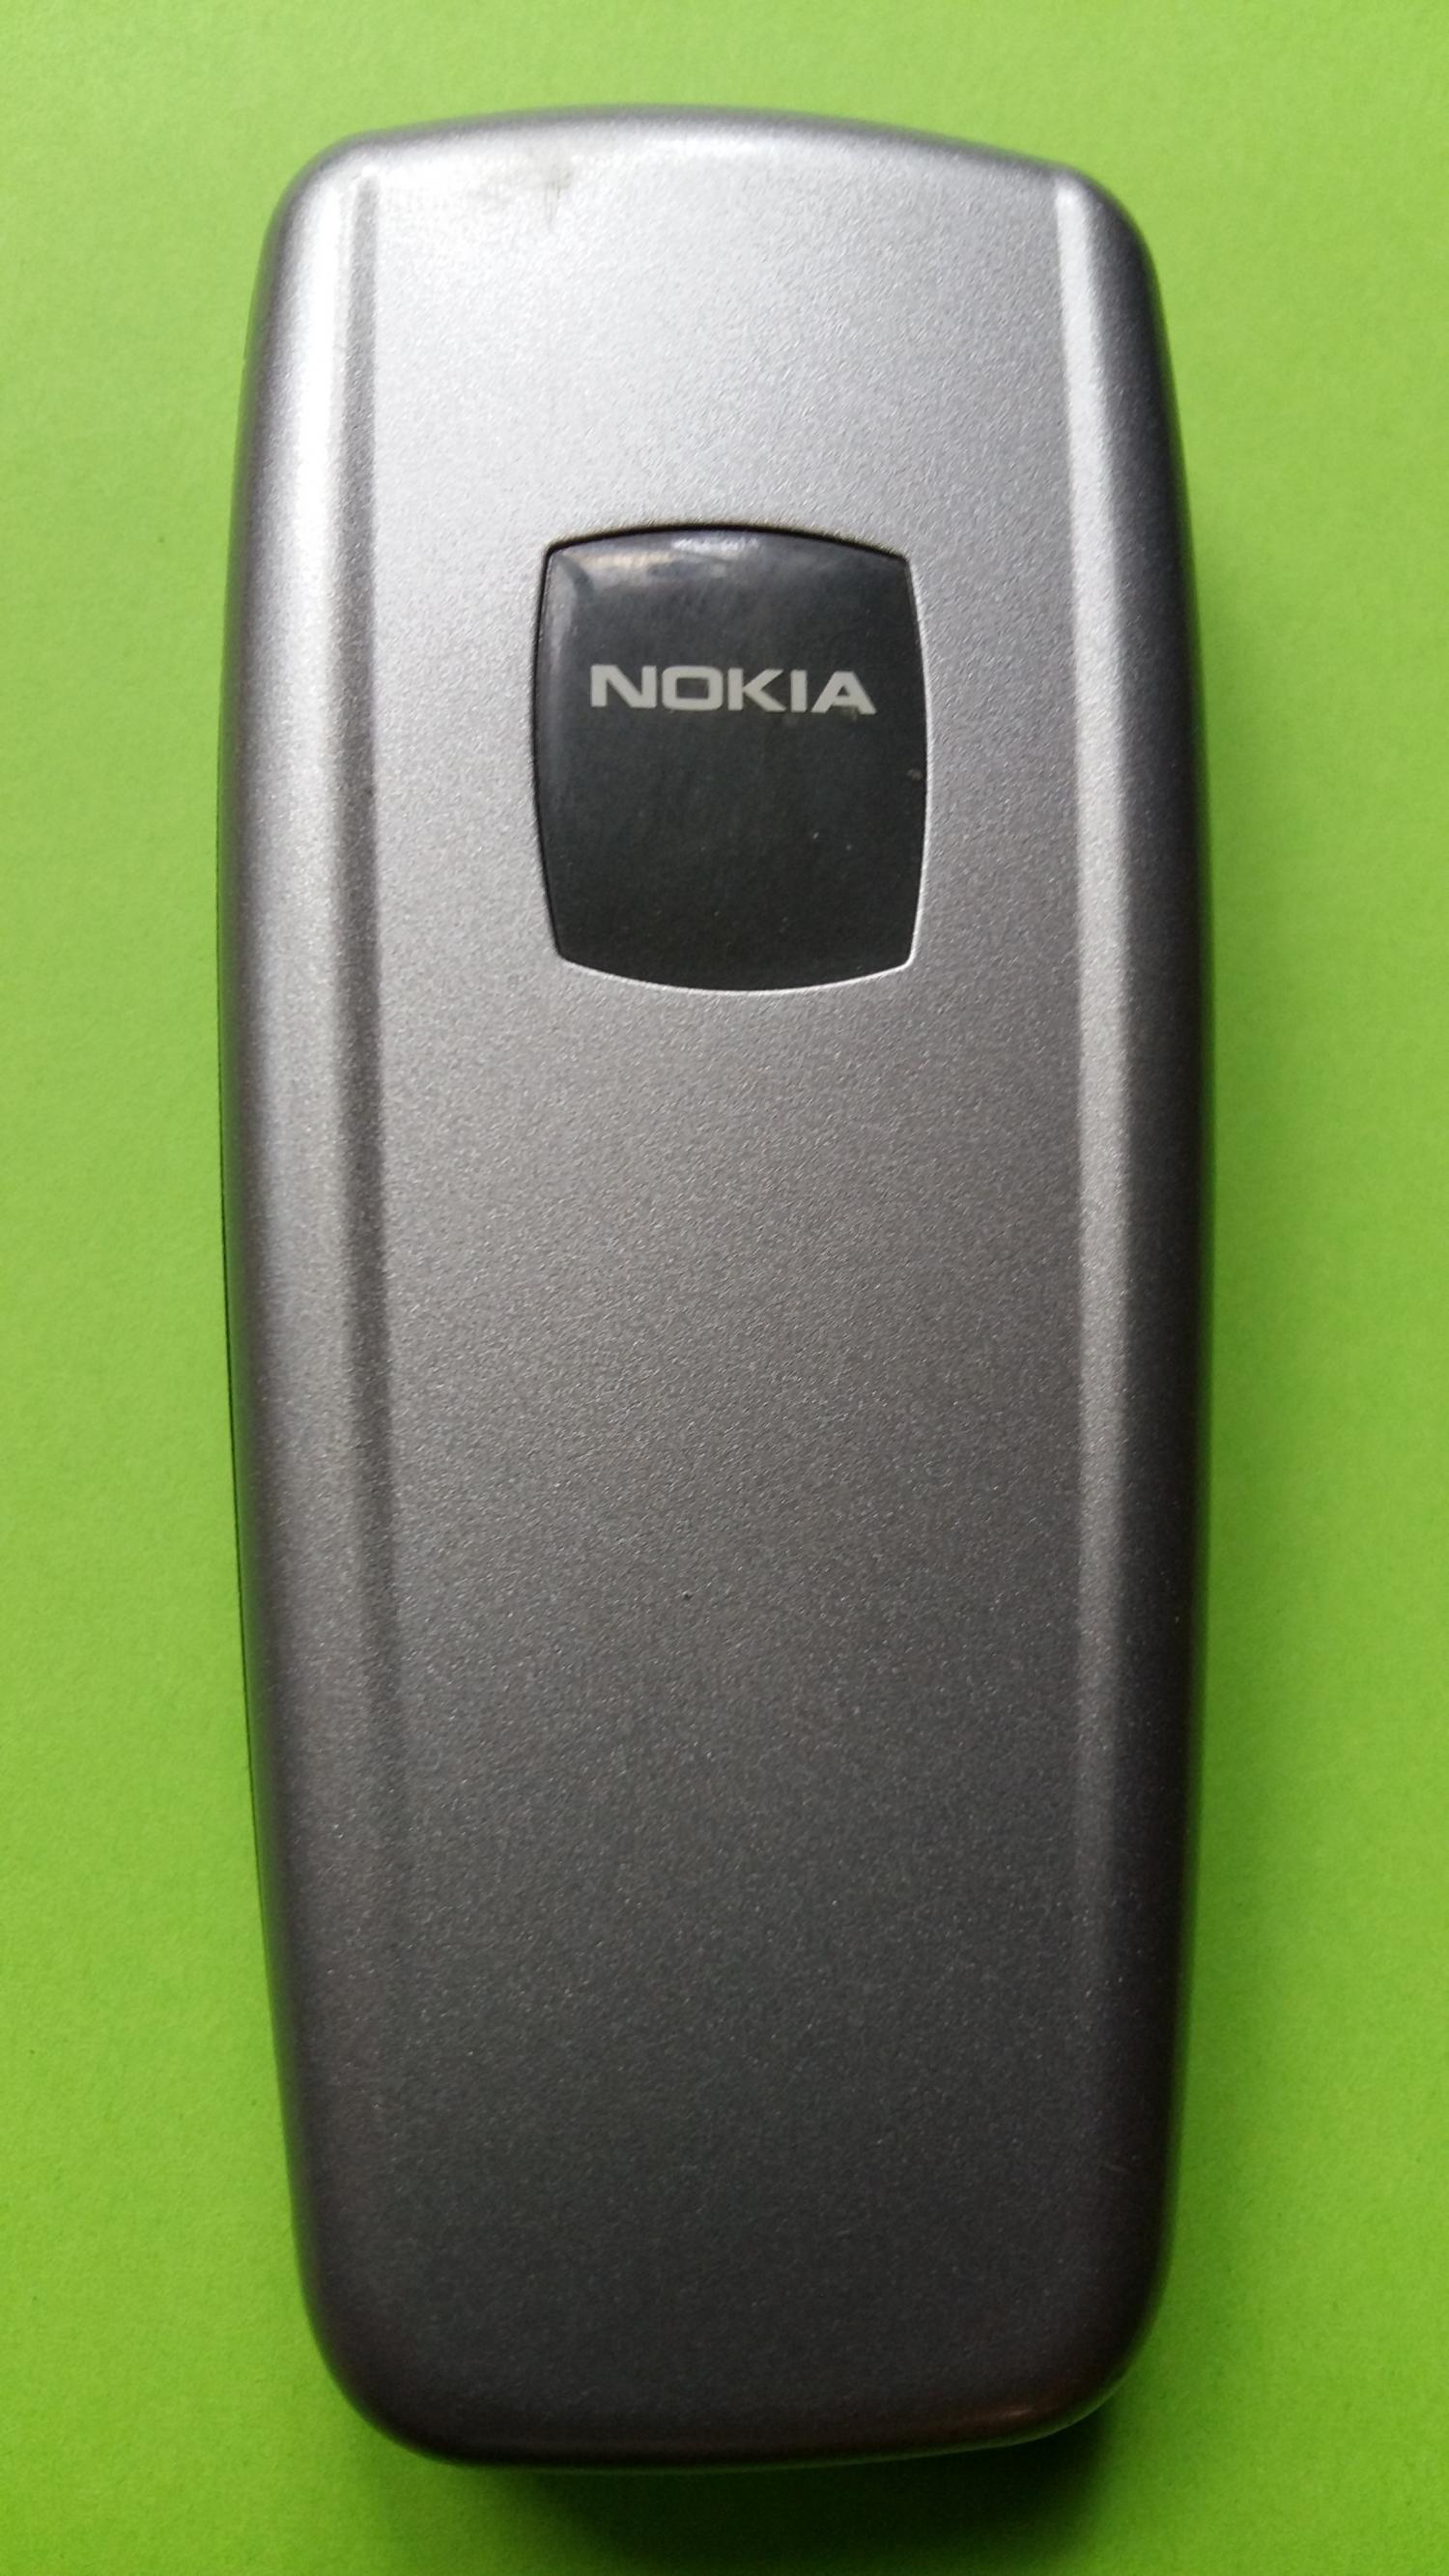 image-7330033-Nokia 2600 (1)2.jpg